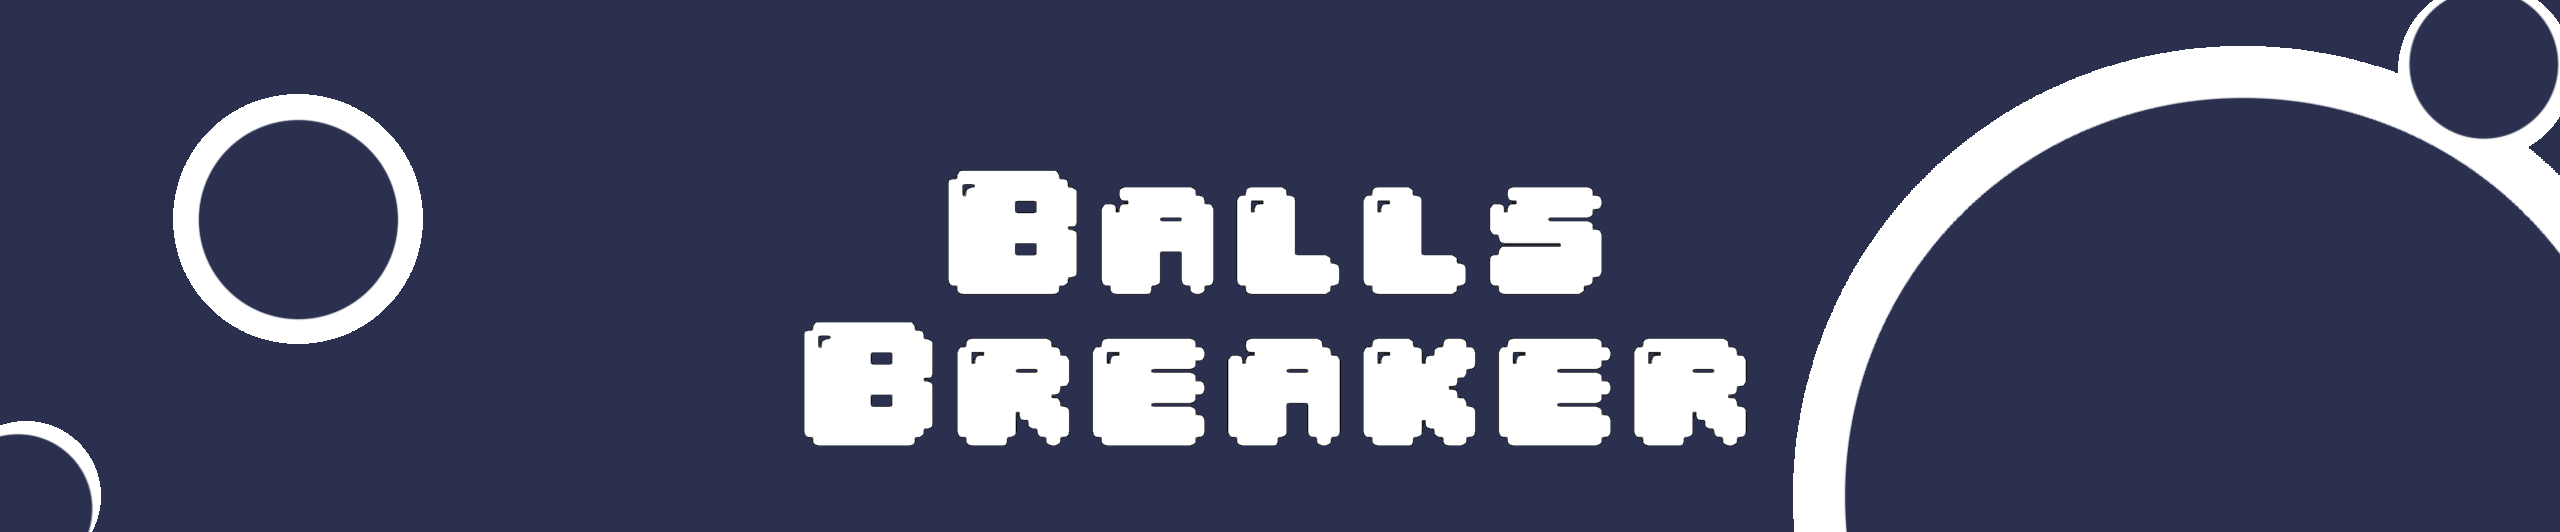 Ballz Breaker